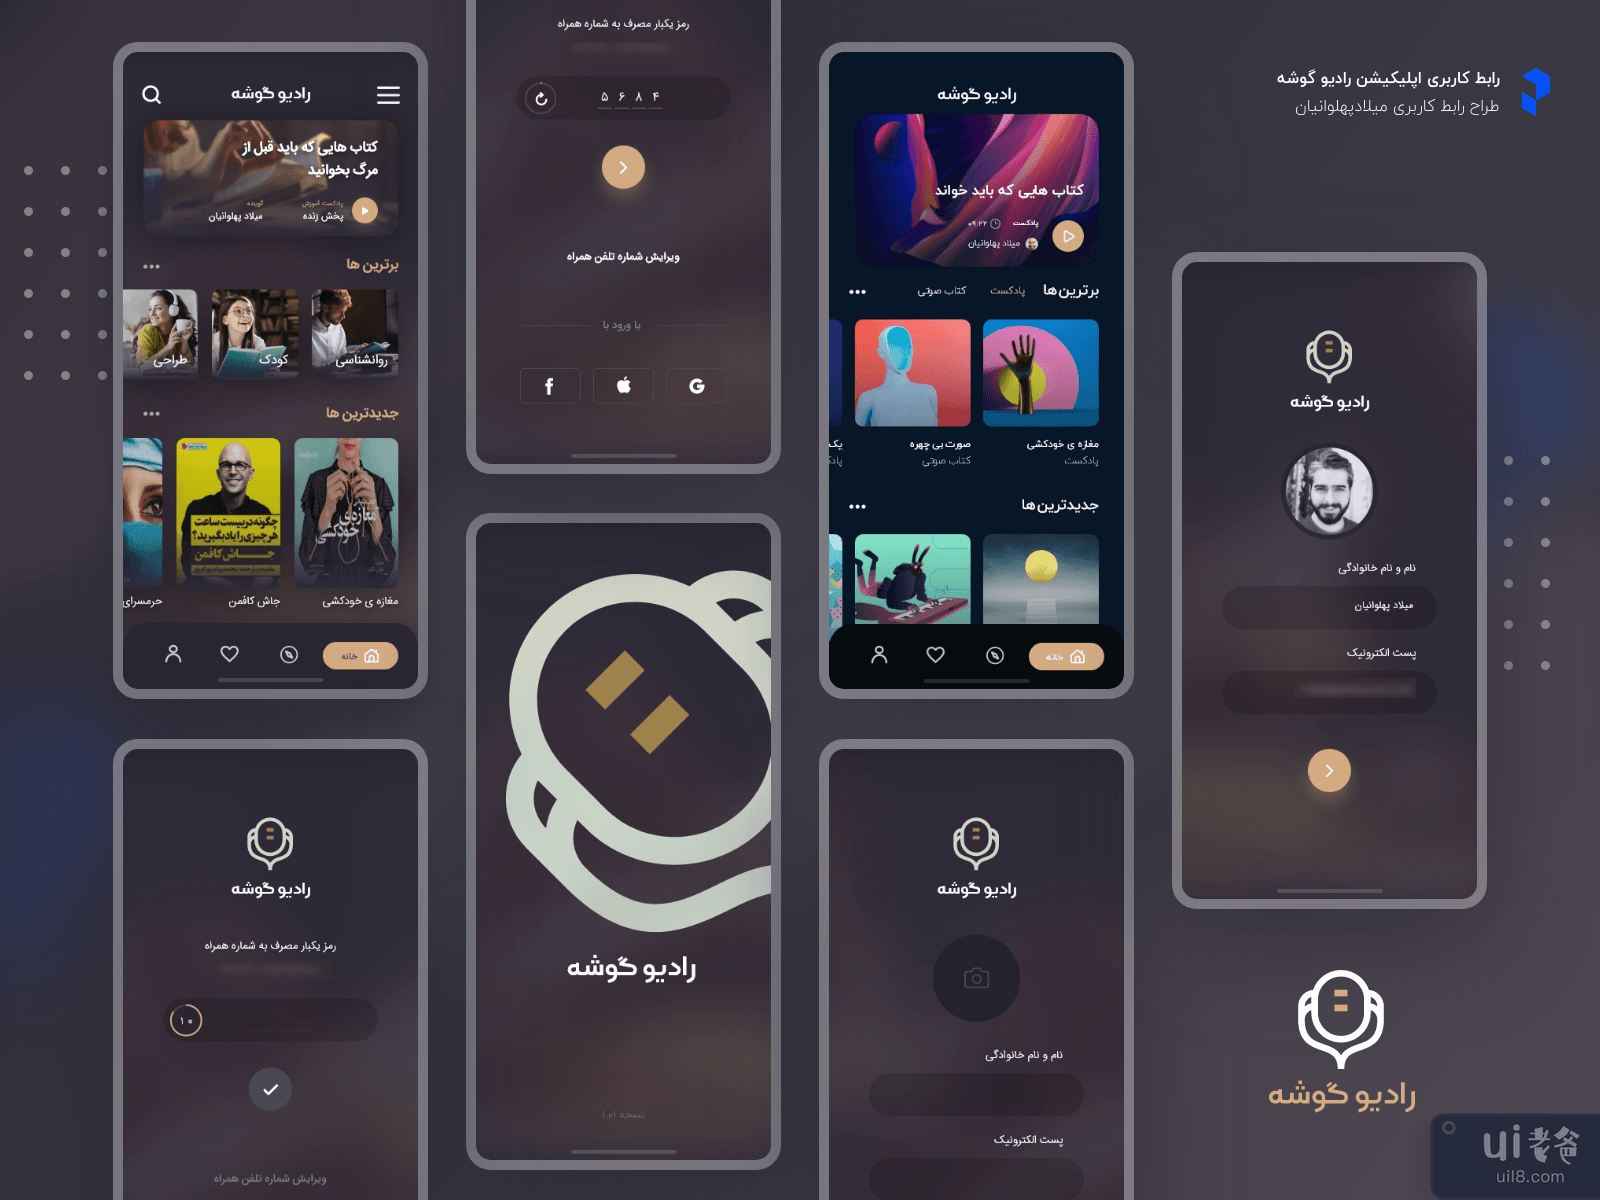 广播和播客 UI 设计应用程序(Radio & Podcast UI Design App)插图